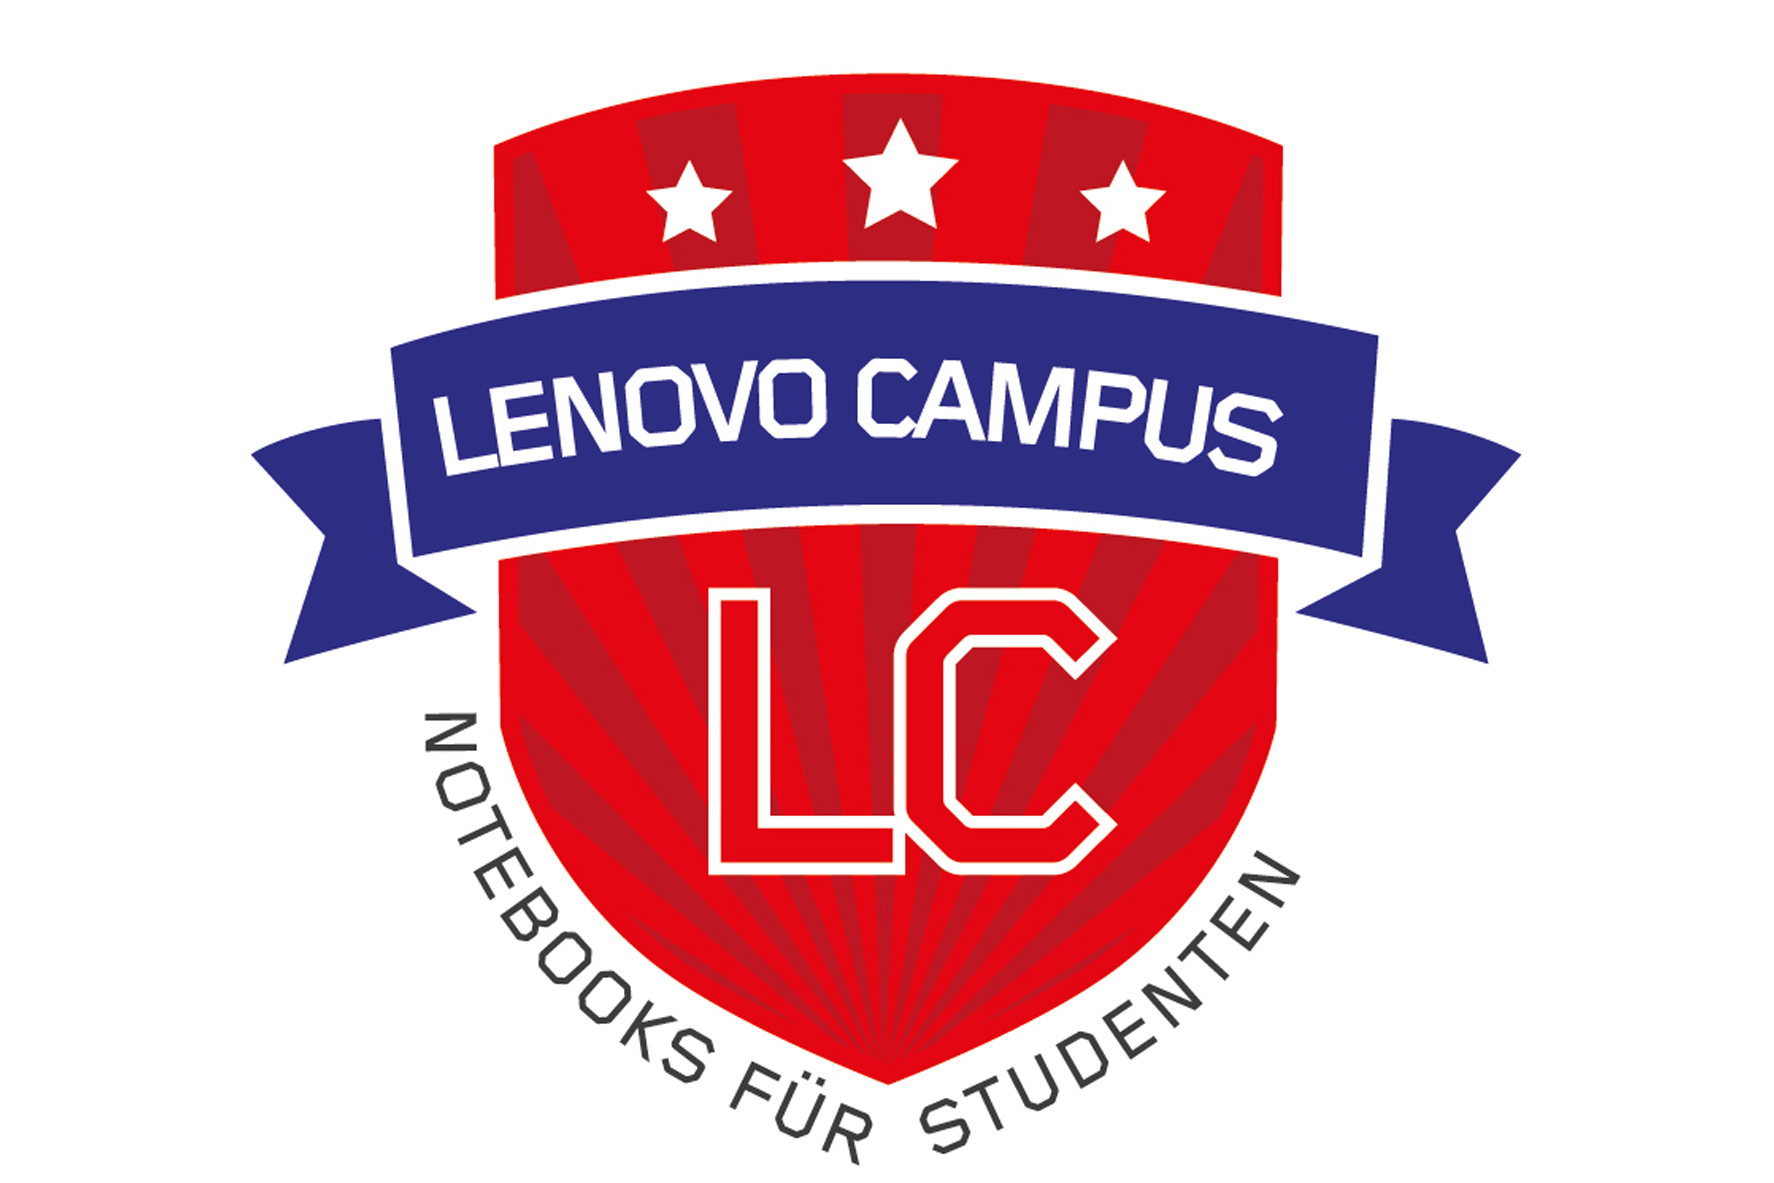 Lenovo Campus